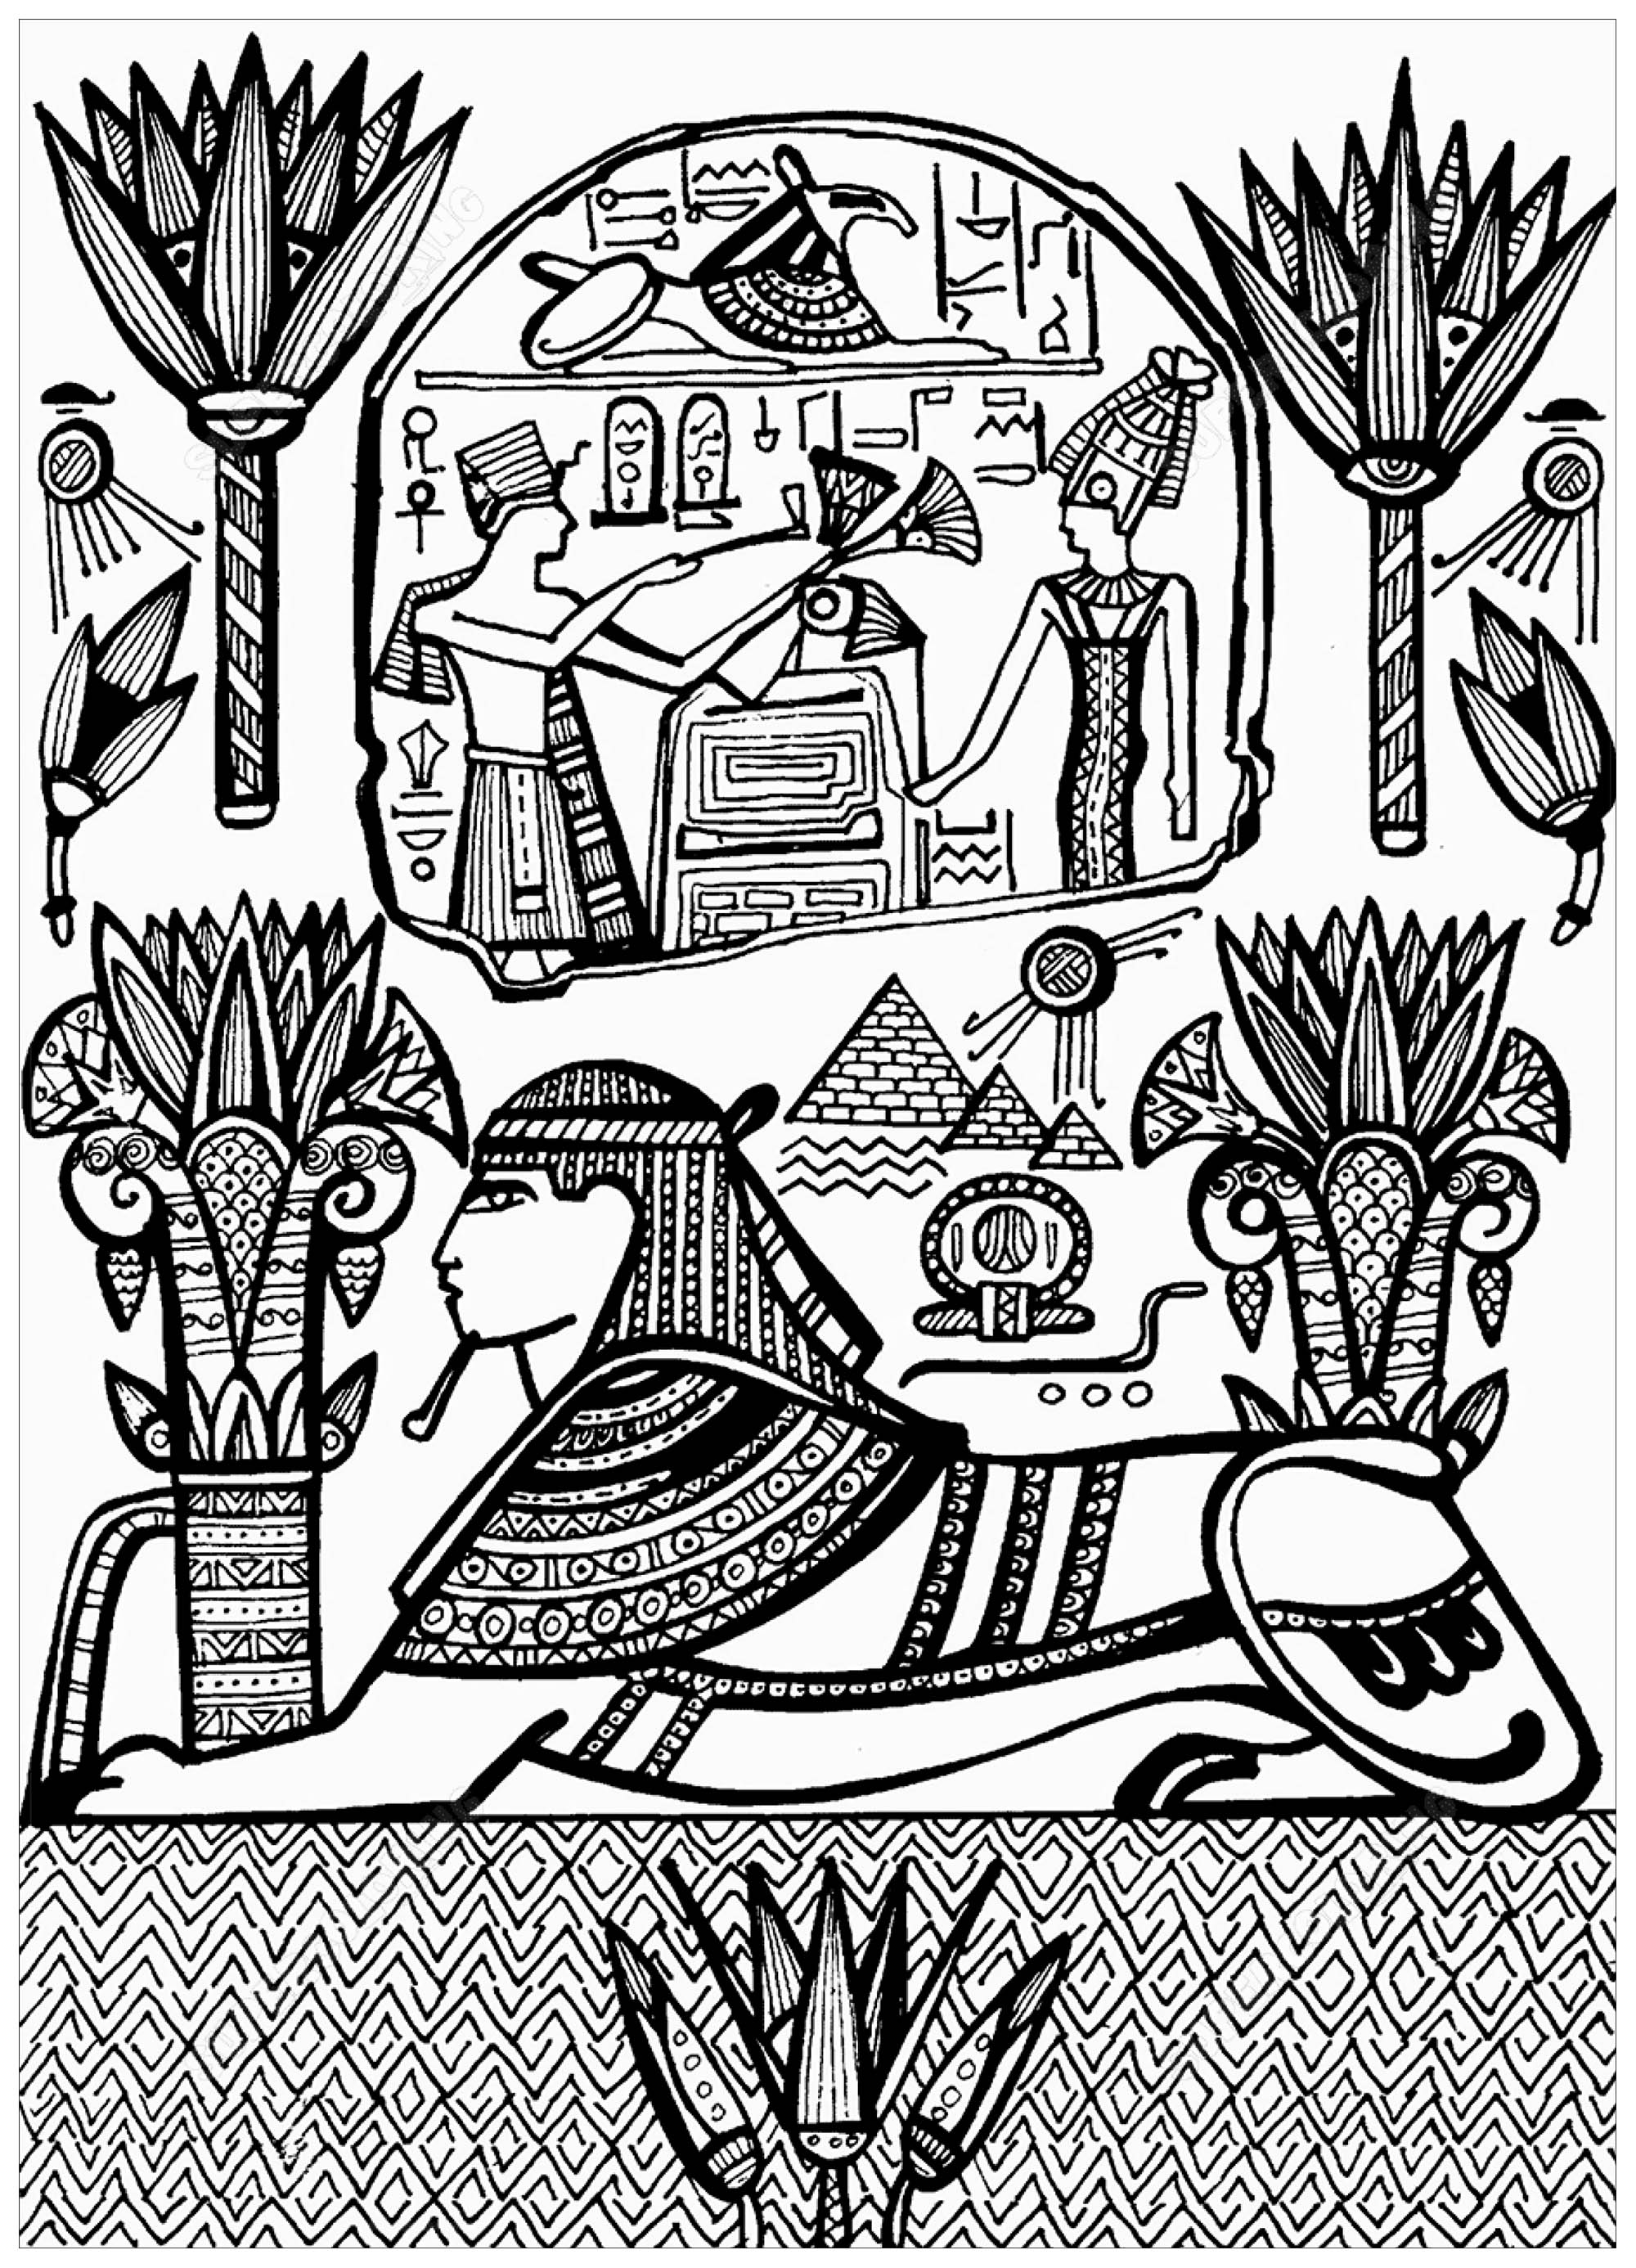 Disegno raffigurante Sfinge con geroglifici, ispirato a un affresco dell'Antico Egitto, Artista : Krivosheeva Olga (Ori Akuma)   Fonte : Supercoloring